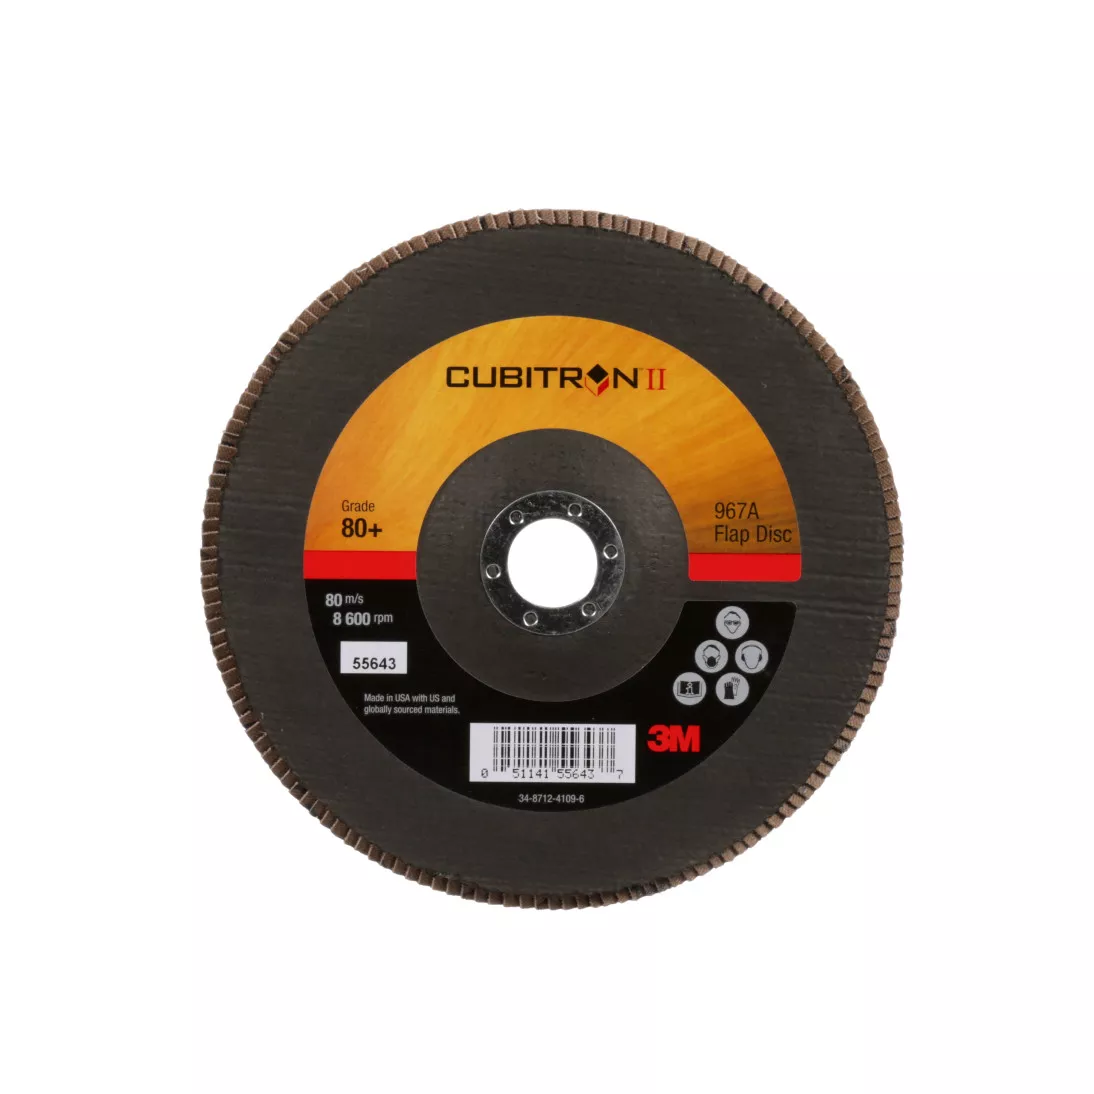 3M™ Cubitron™ II Flap Disc 967A, 80+, T27, 7 in x 7/8 in, Giant, 5
ea/Case